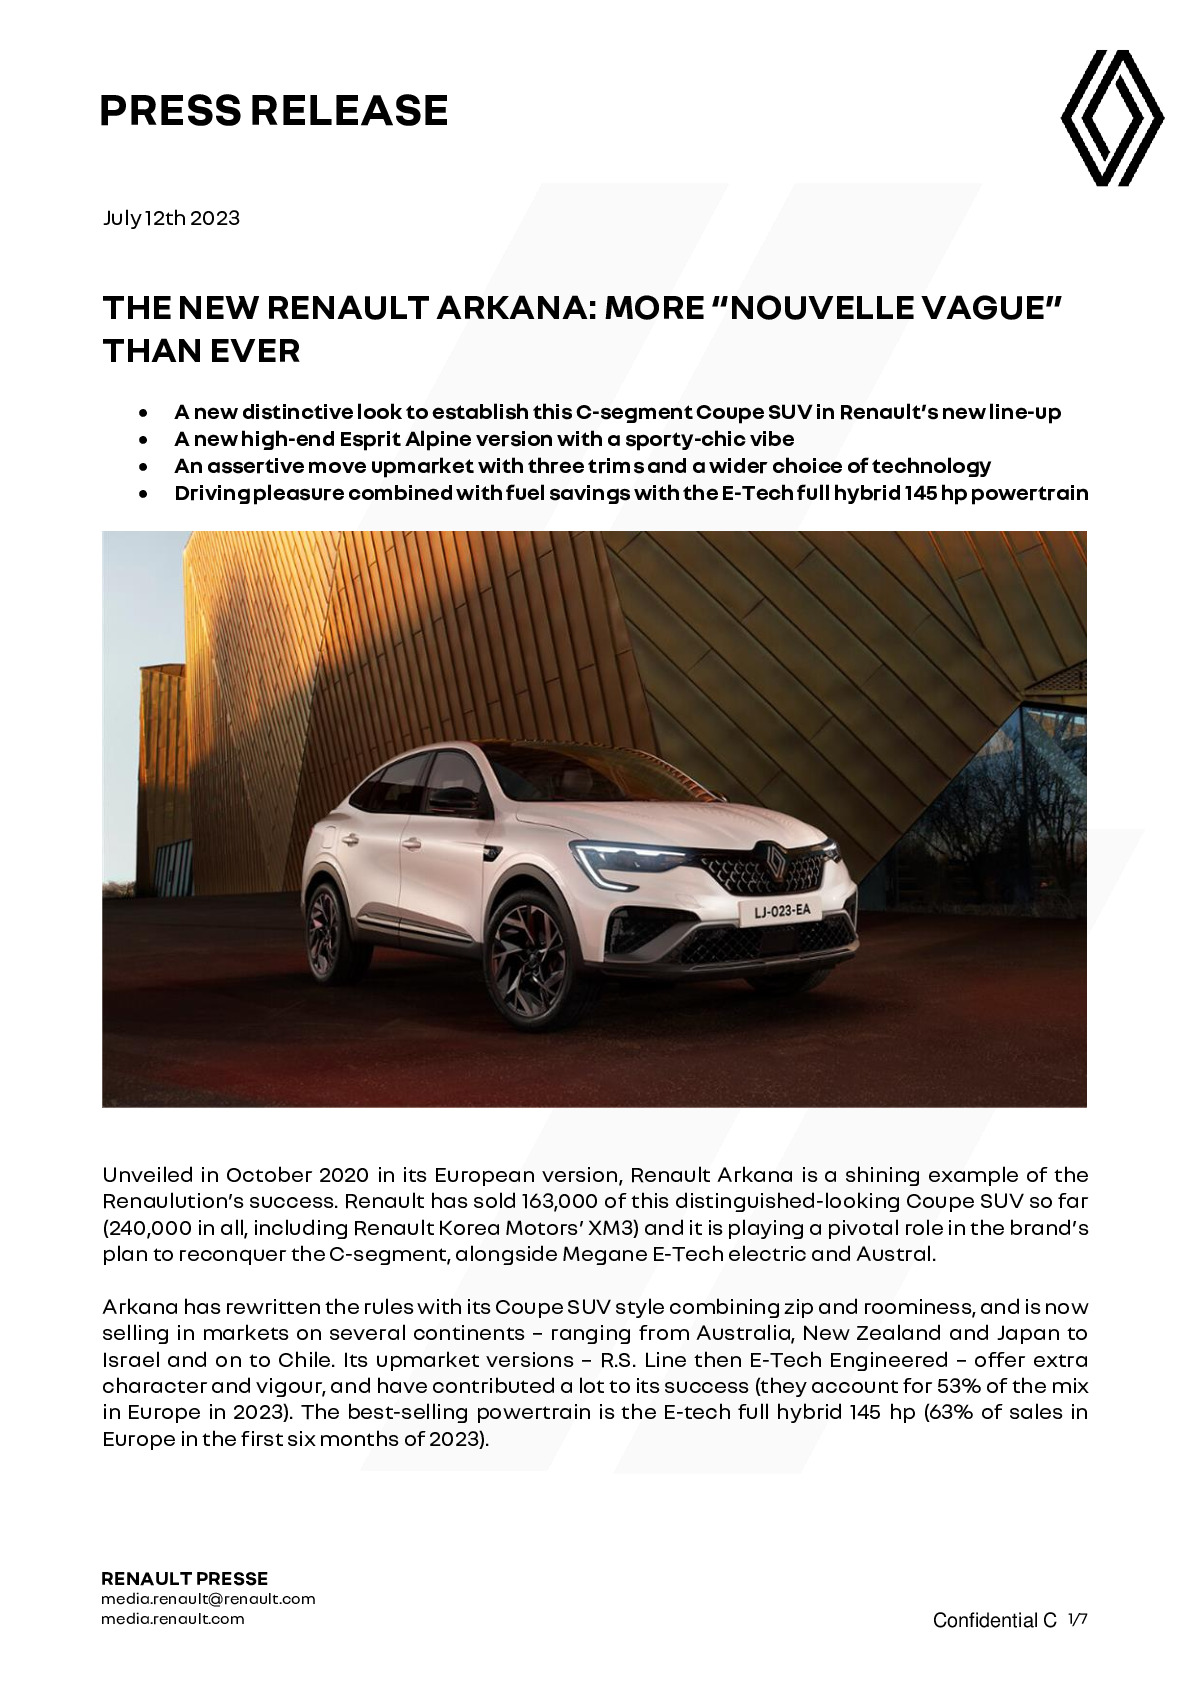 New Renault Arkana E-Tech Full Hybrid Cars for Sale